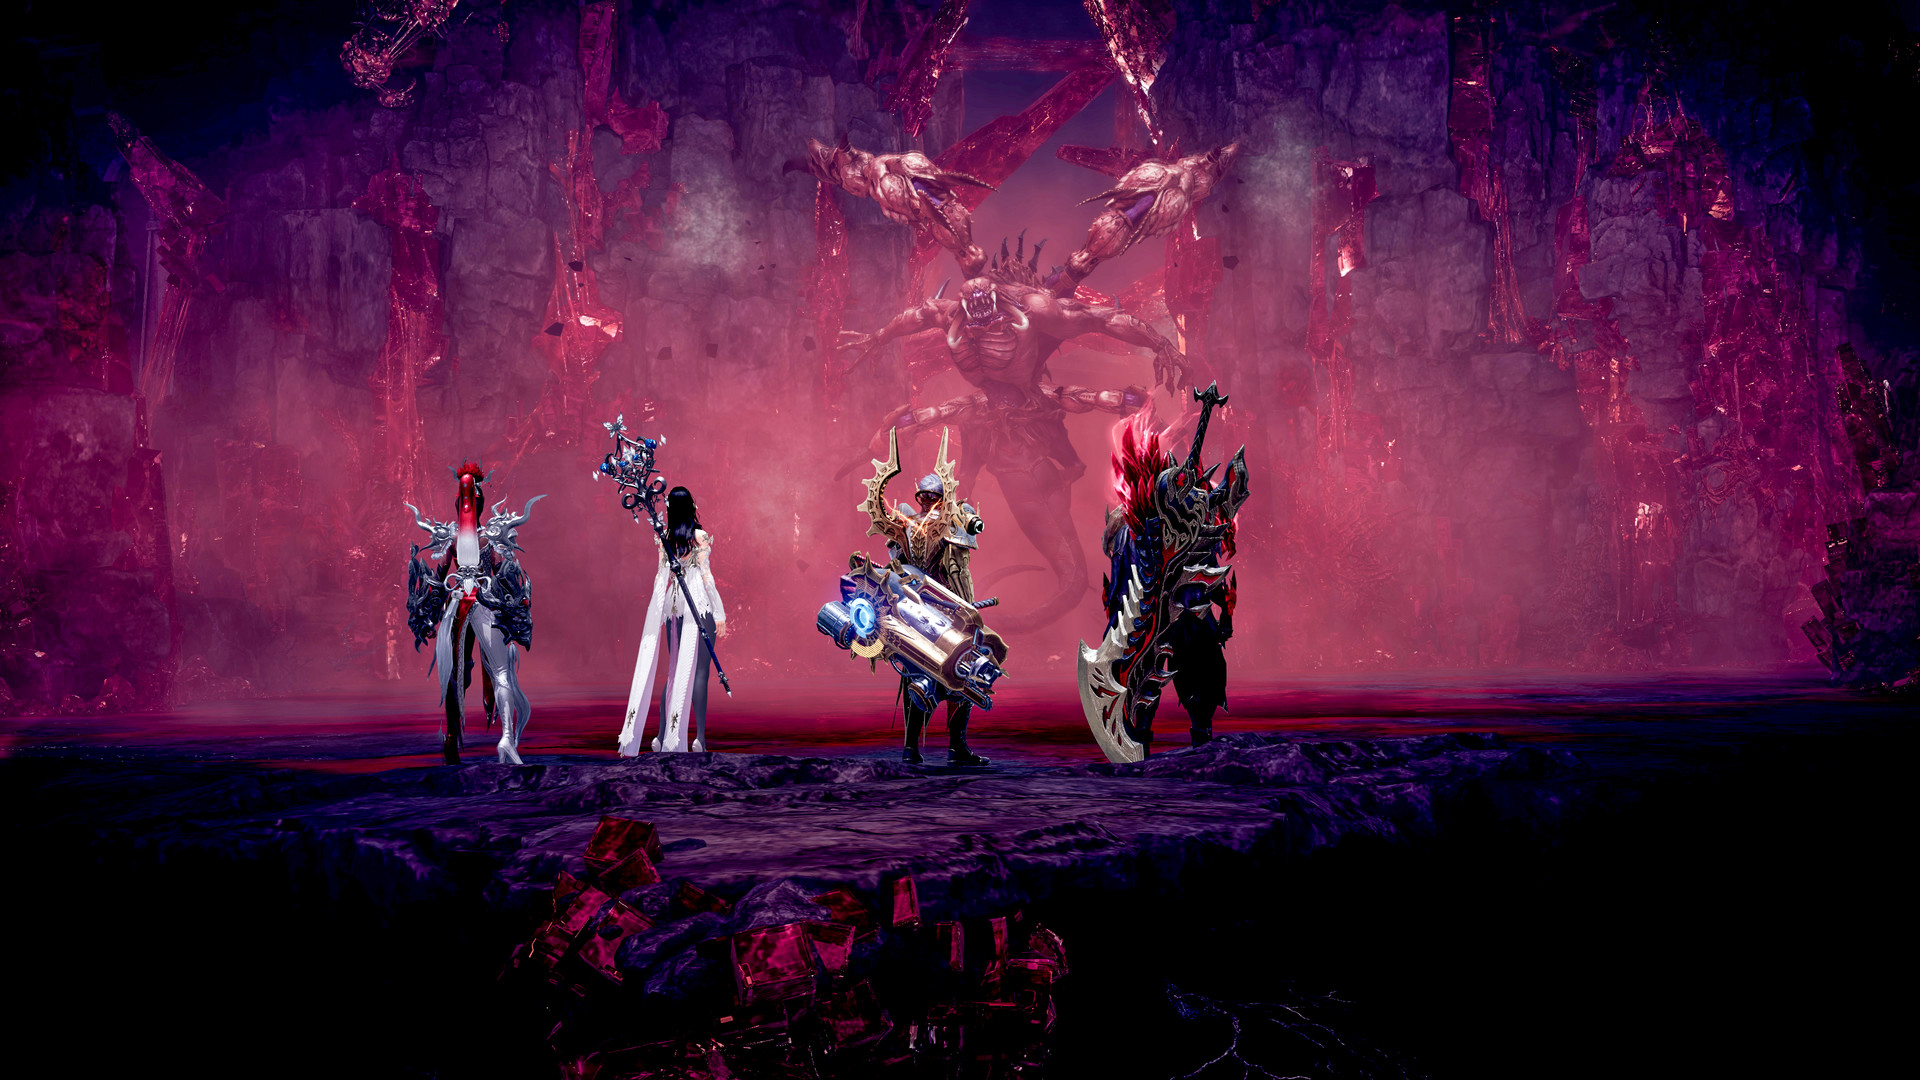 Des jeux comme Diablo: quatre héros se préparent à affronter un monstre dans Lost Ark